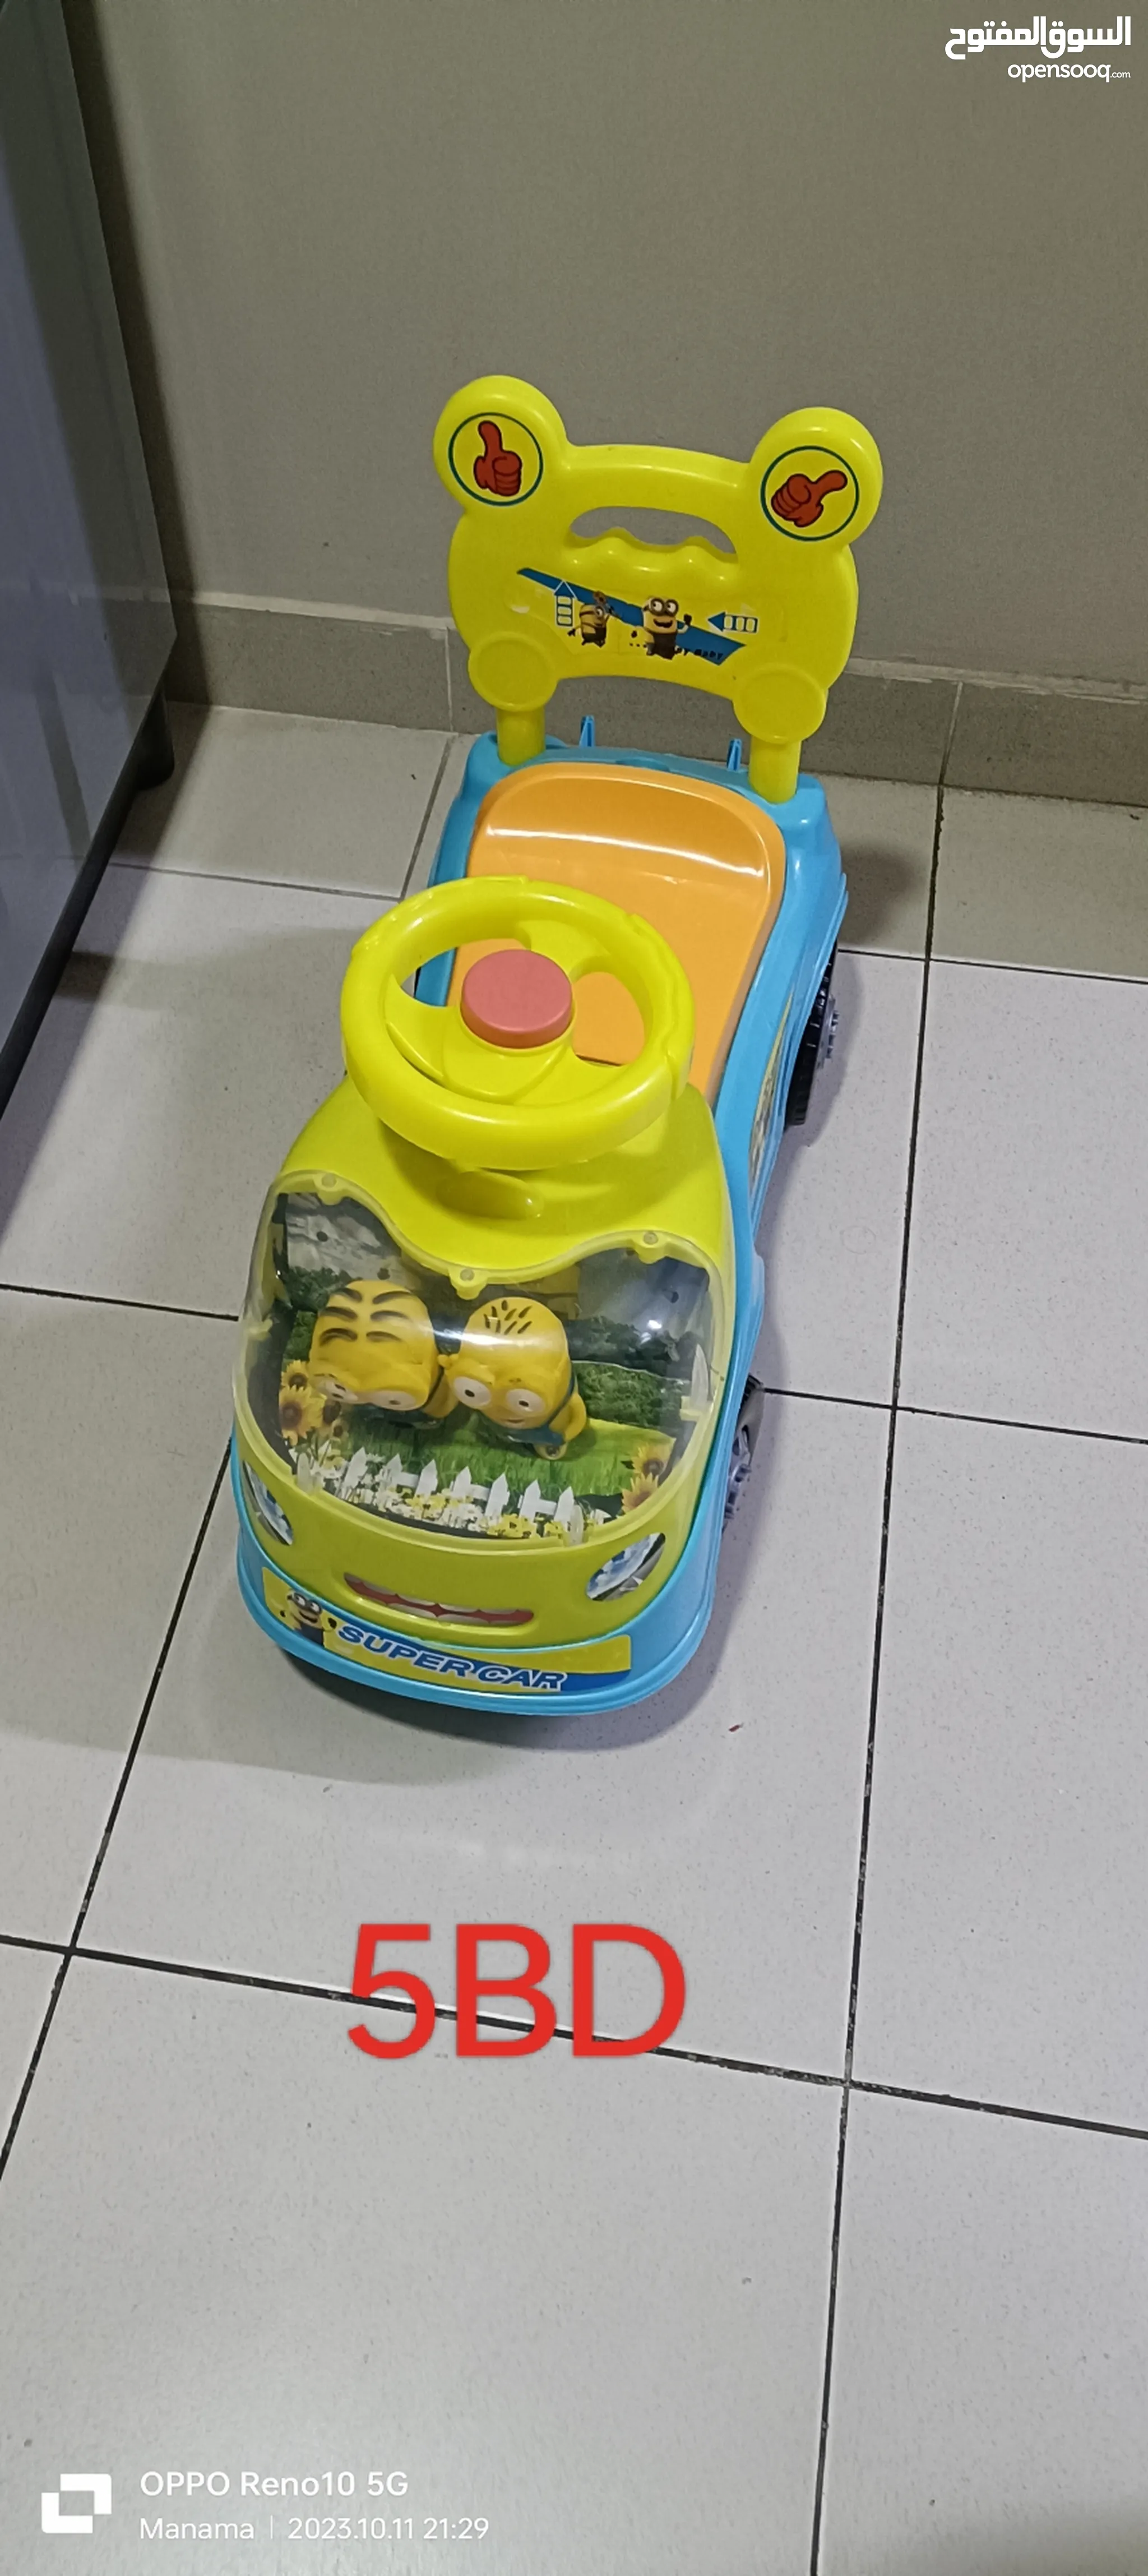 العاب اطفال للبيع : سيارات : طبخ : العاب تعليم : ارخص الاسعار في المنامة |  السوق المفتوح